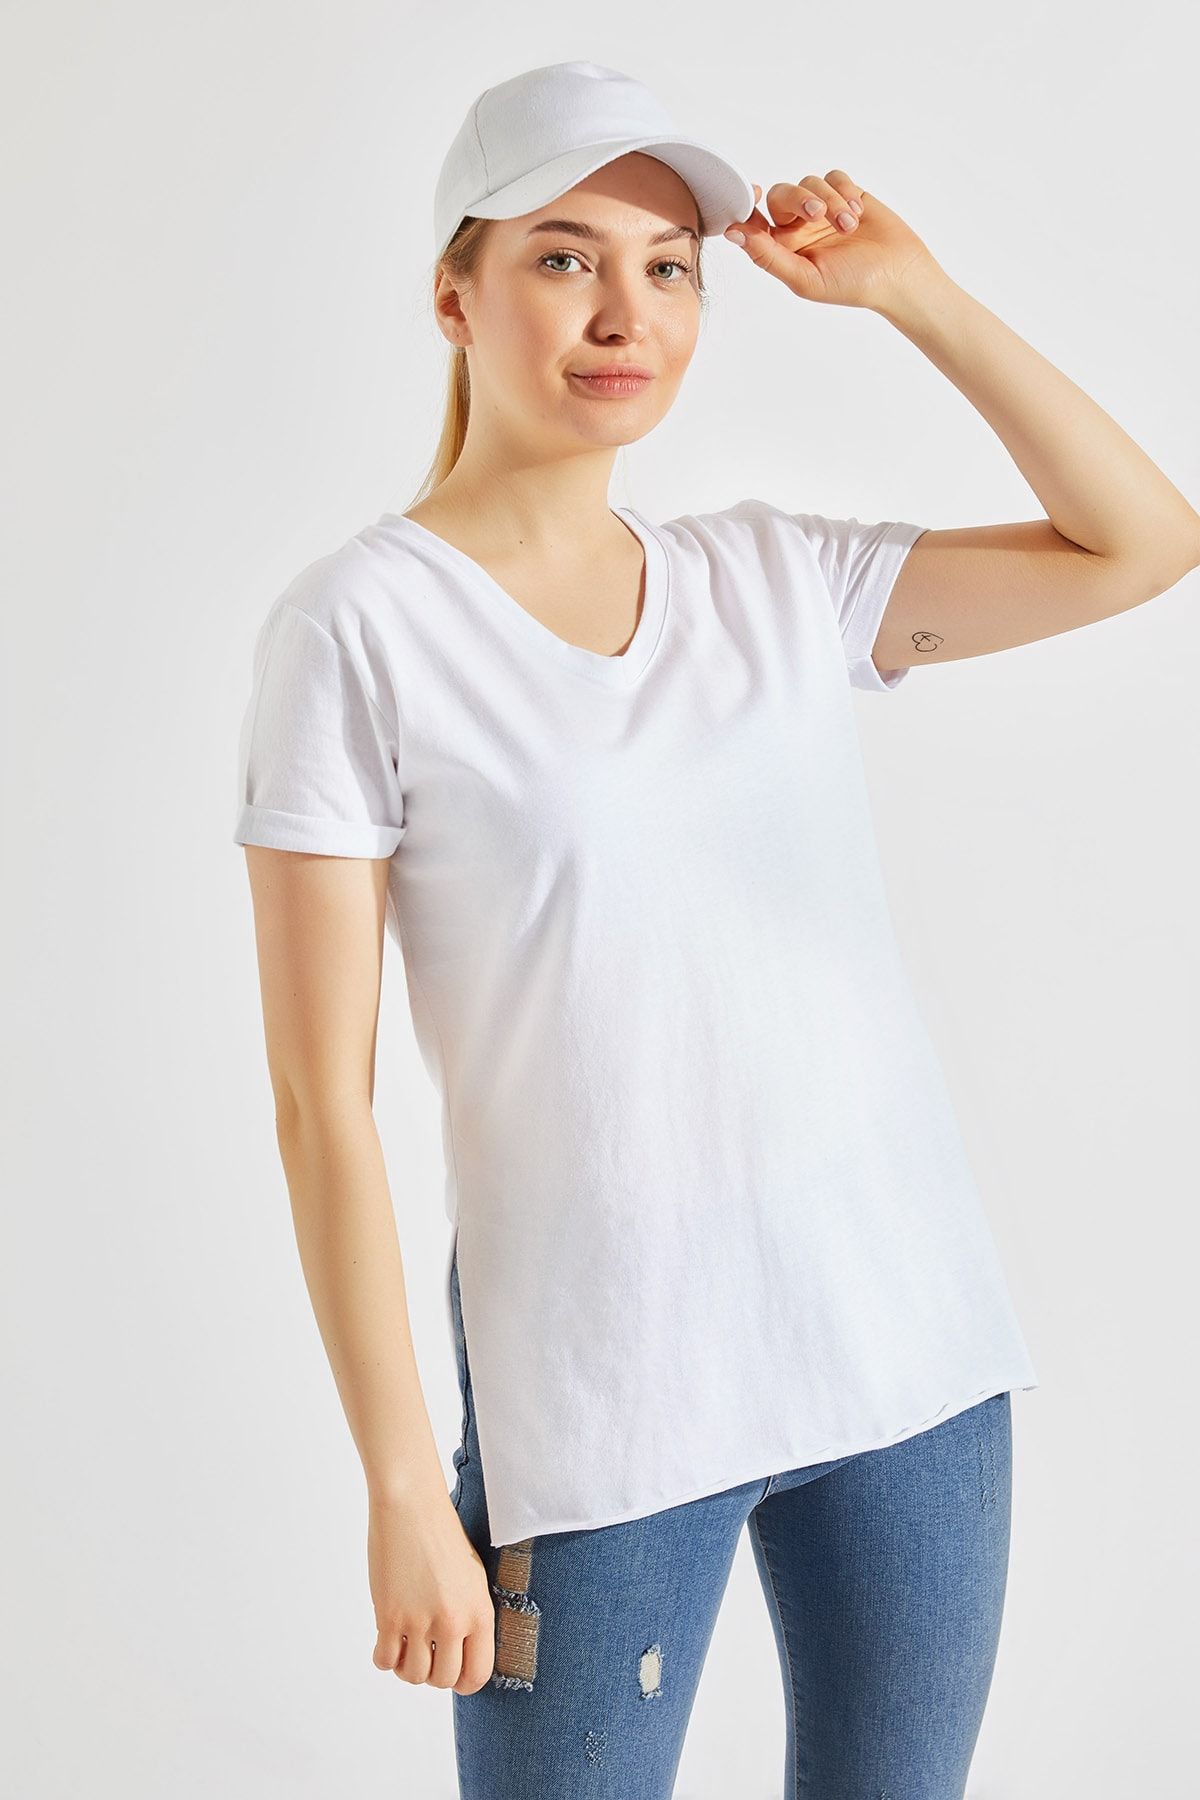 Zafoni Kadın Yırtmaçlı Beyaz Tişört